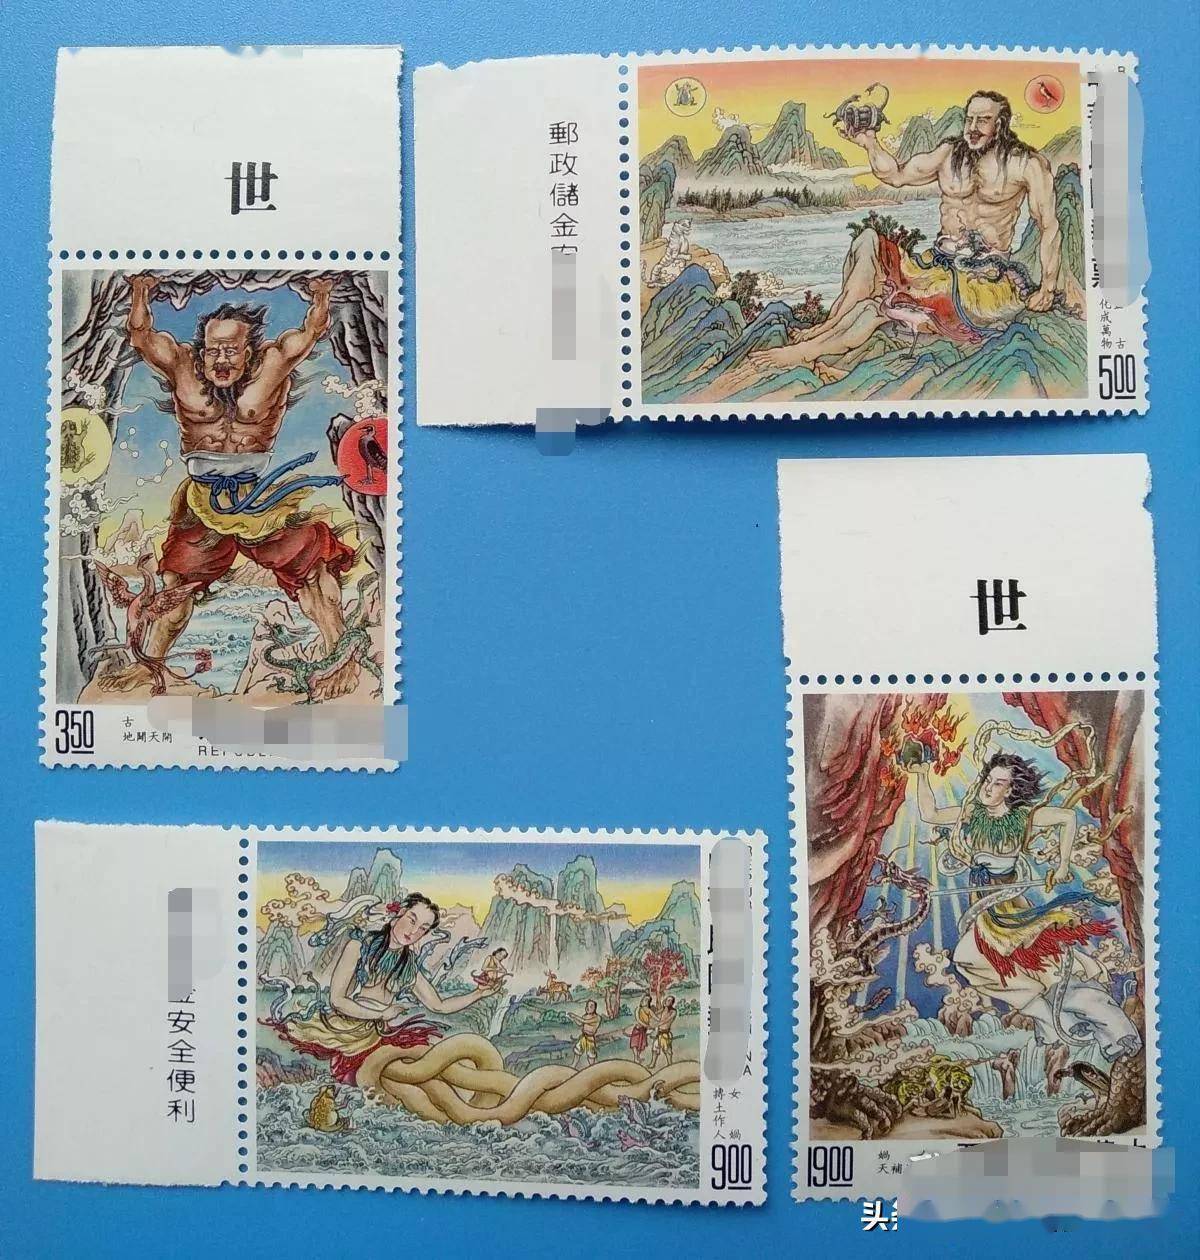 邮票龙头品种不一定让人喜欢,这一年的邮票收藏价值高